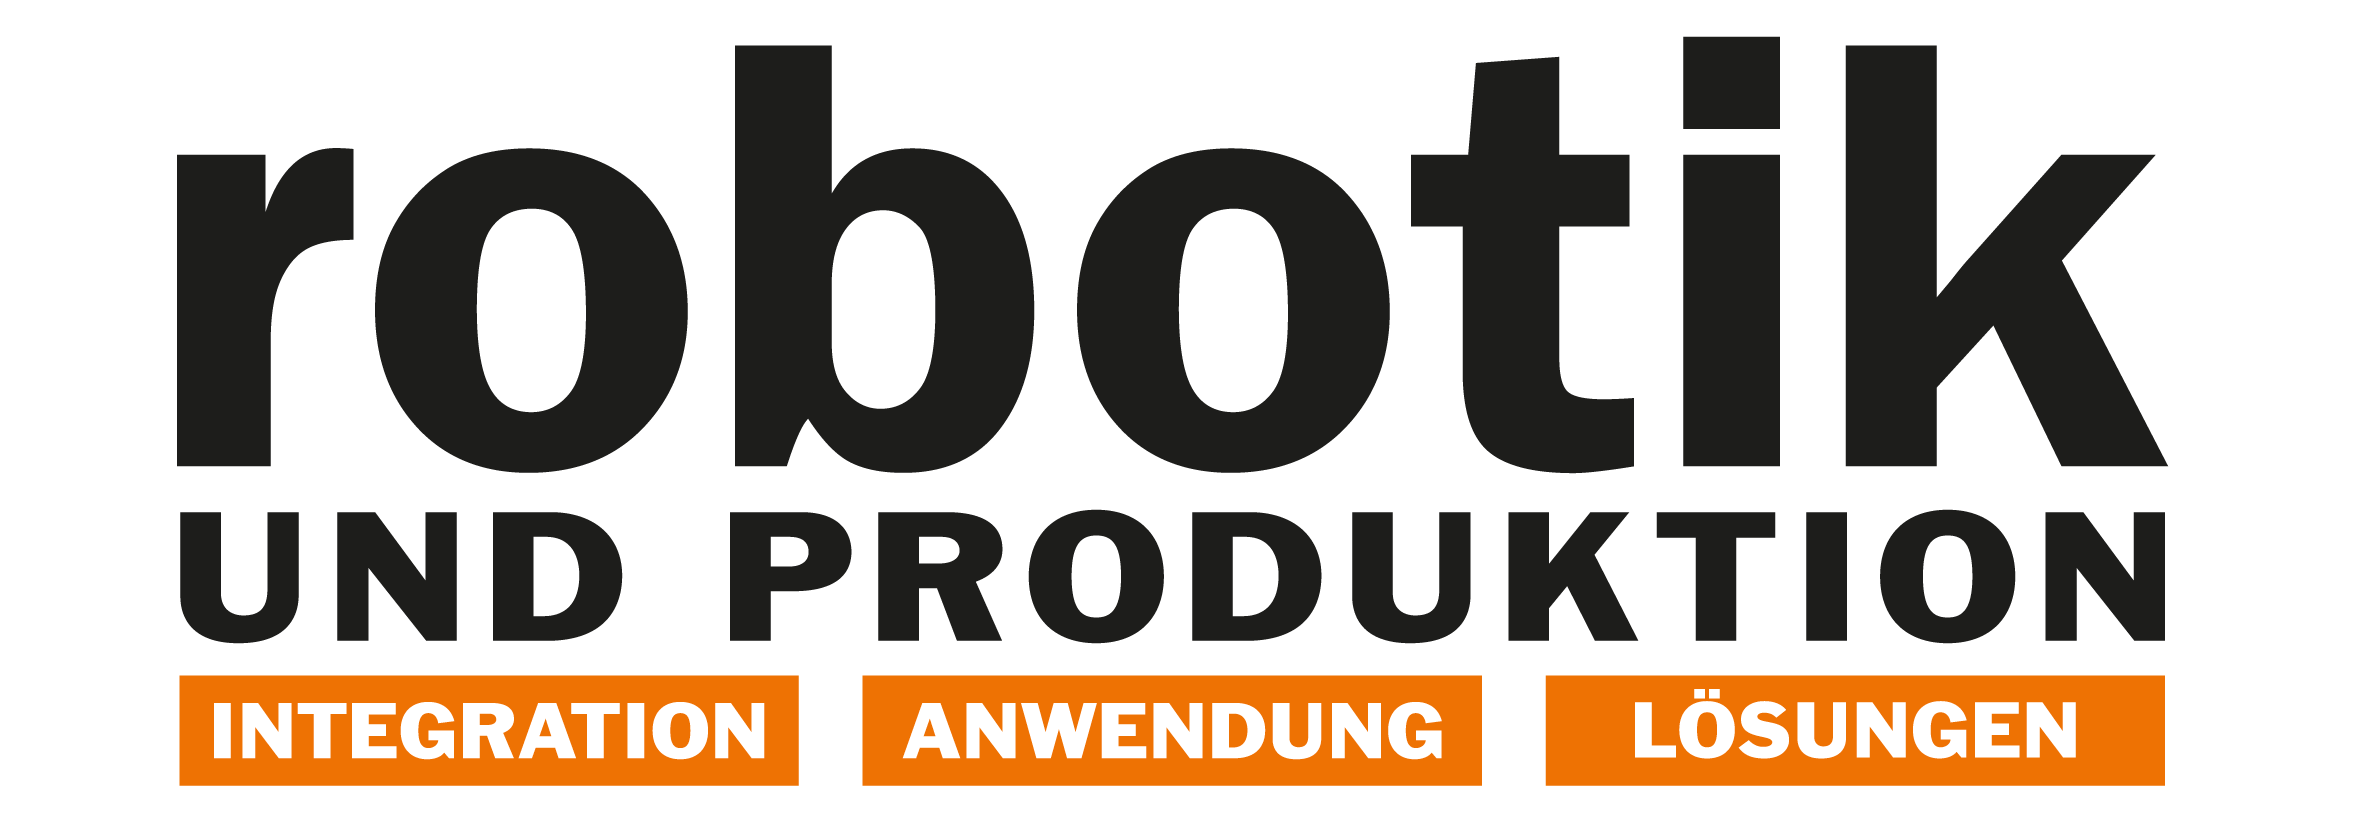 
			15 ROBOTIK-UND-PRODUKTION -4C_Logo_ROBOTIK-UND-PRODUKTION_300dpi
		